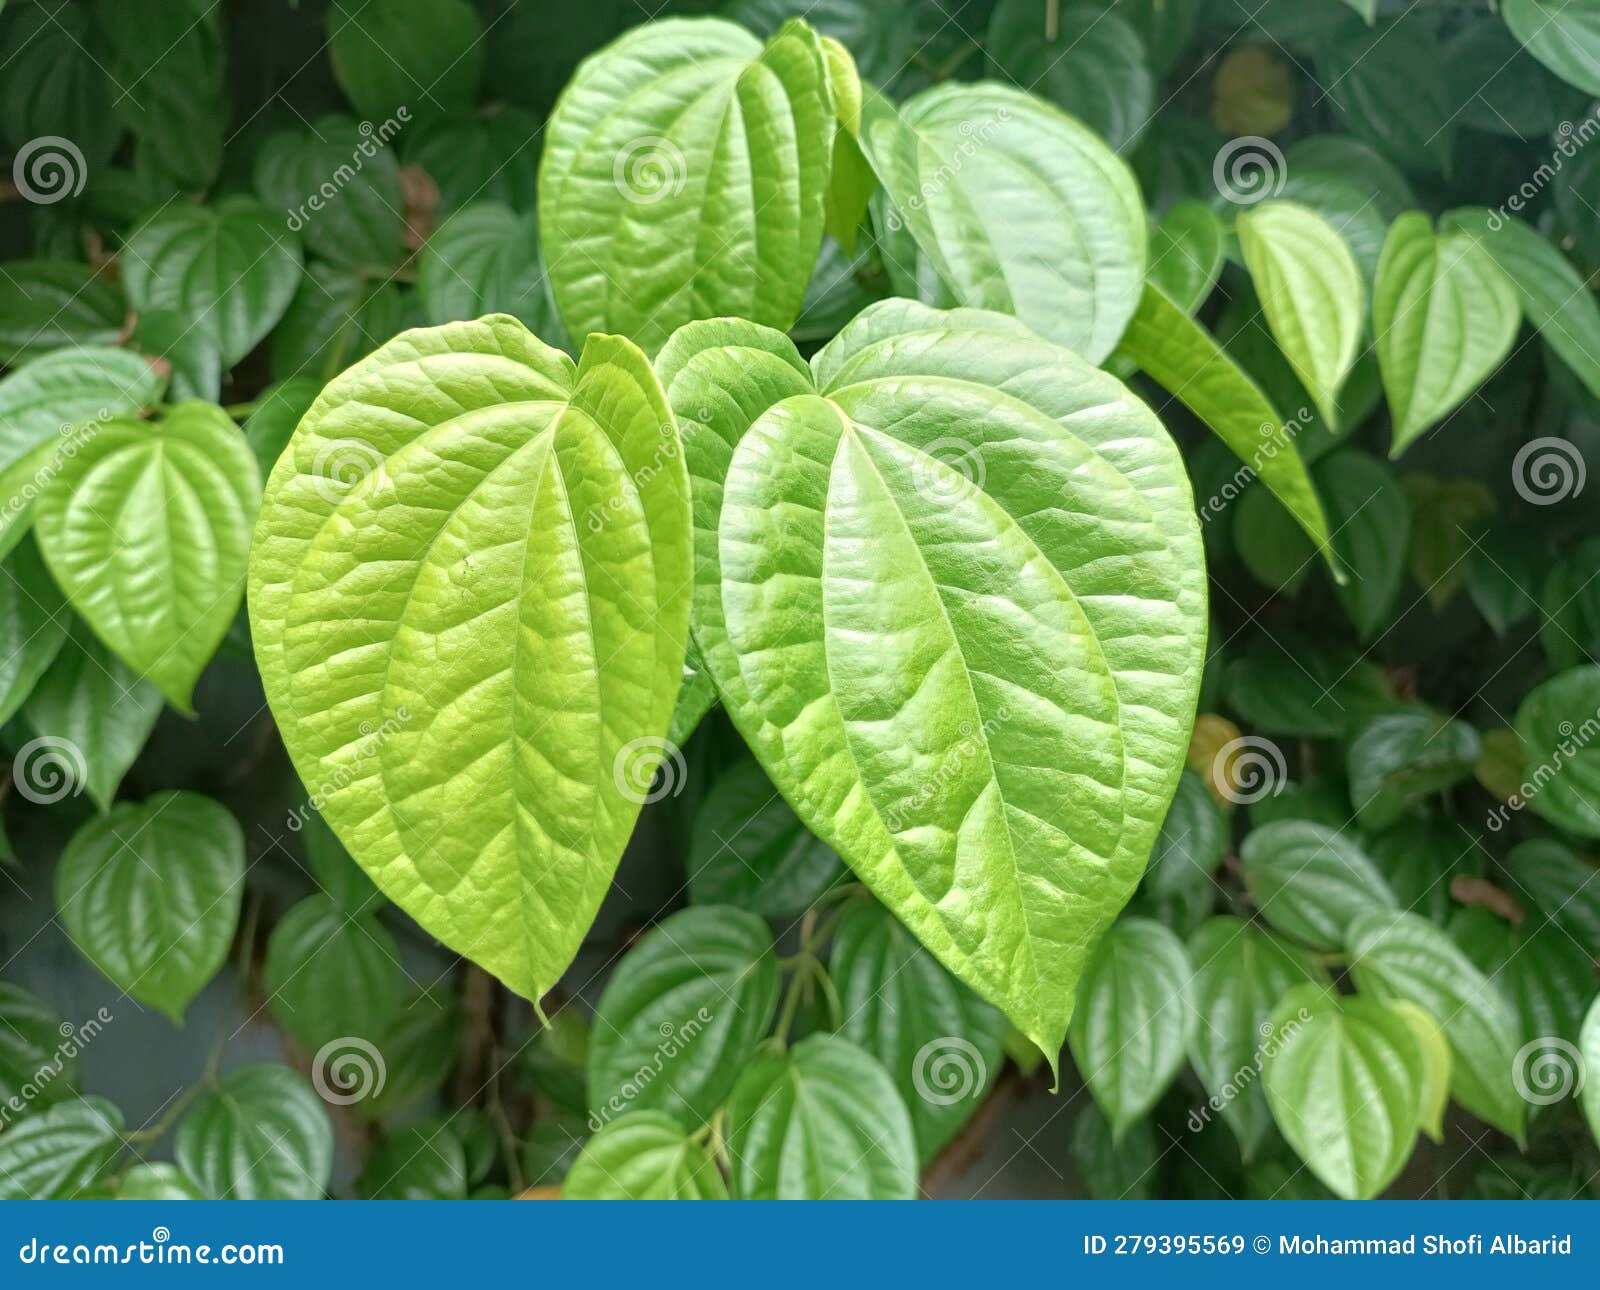 Piper Betle Leaf or Daun Sirih for Medicinal Purposes, Beautiful Green ...